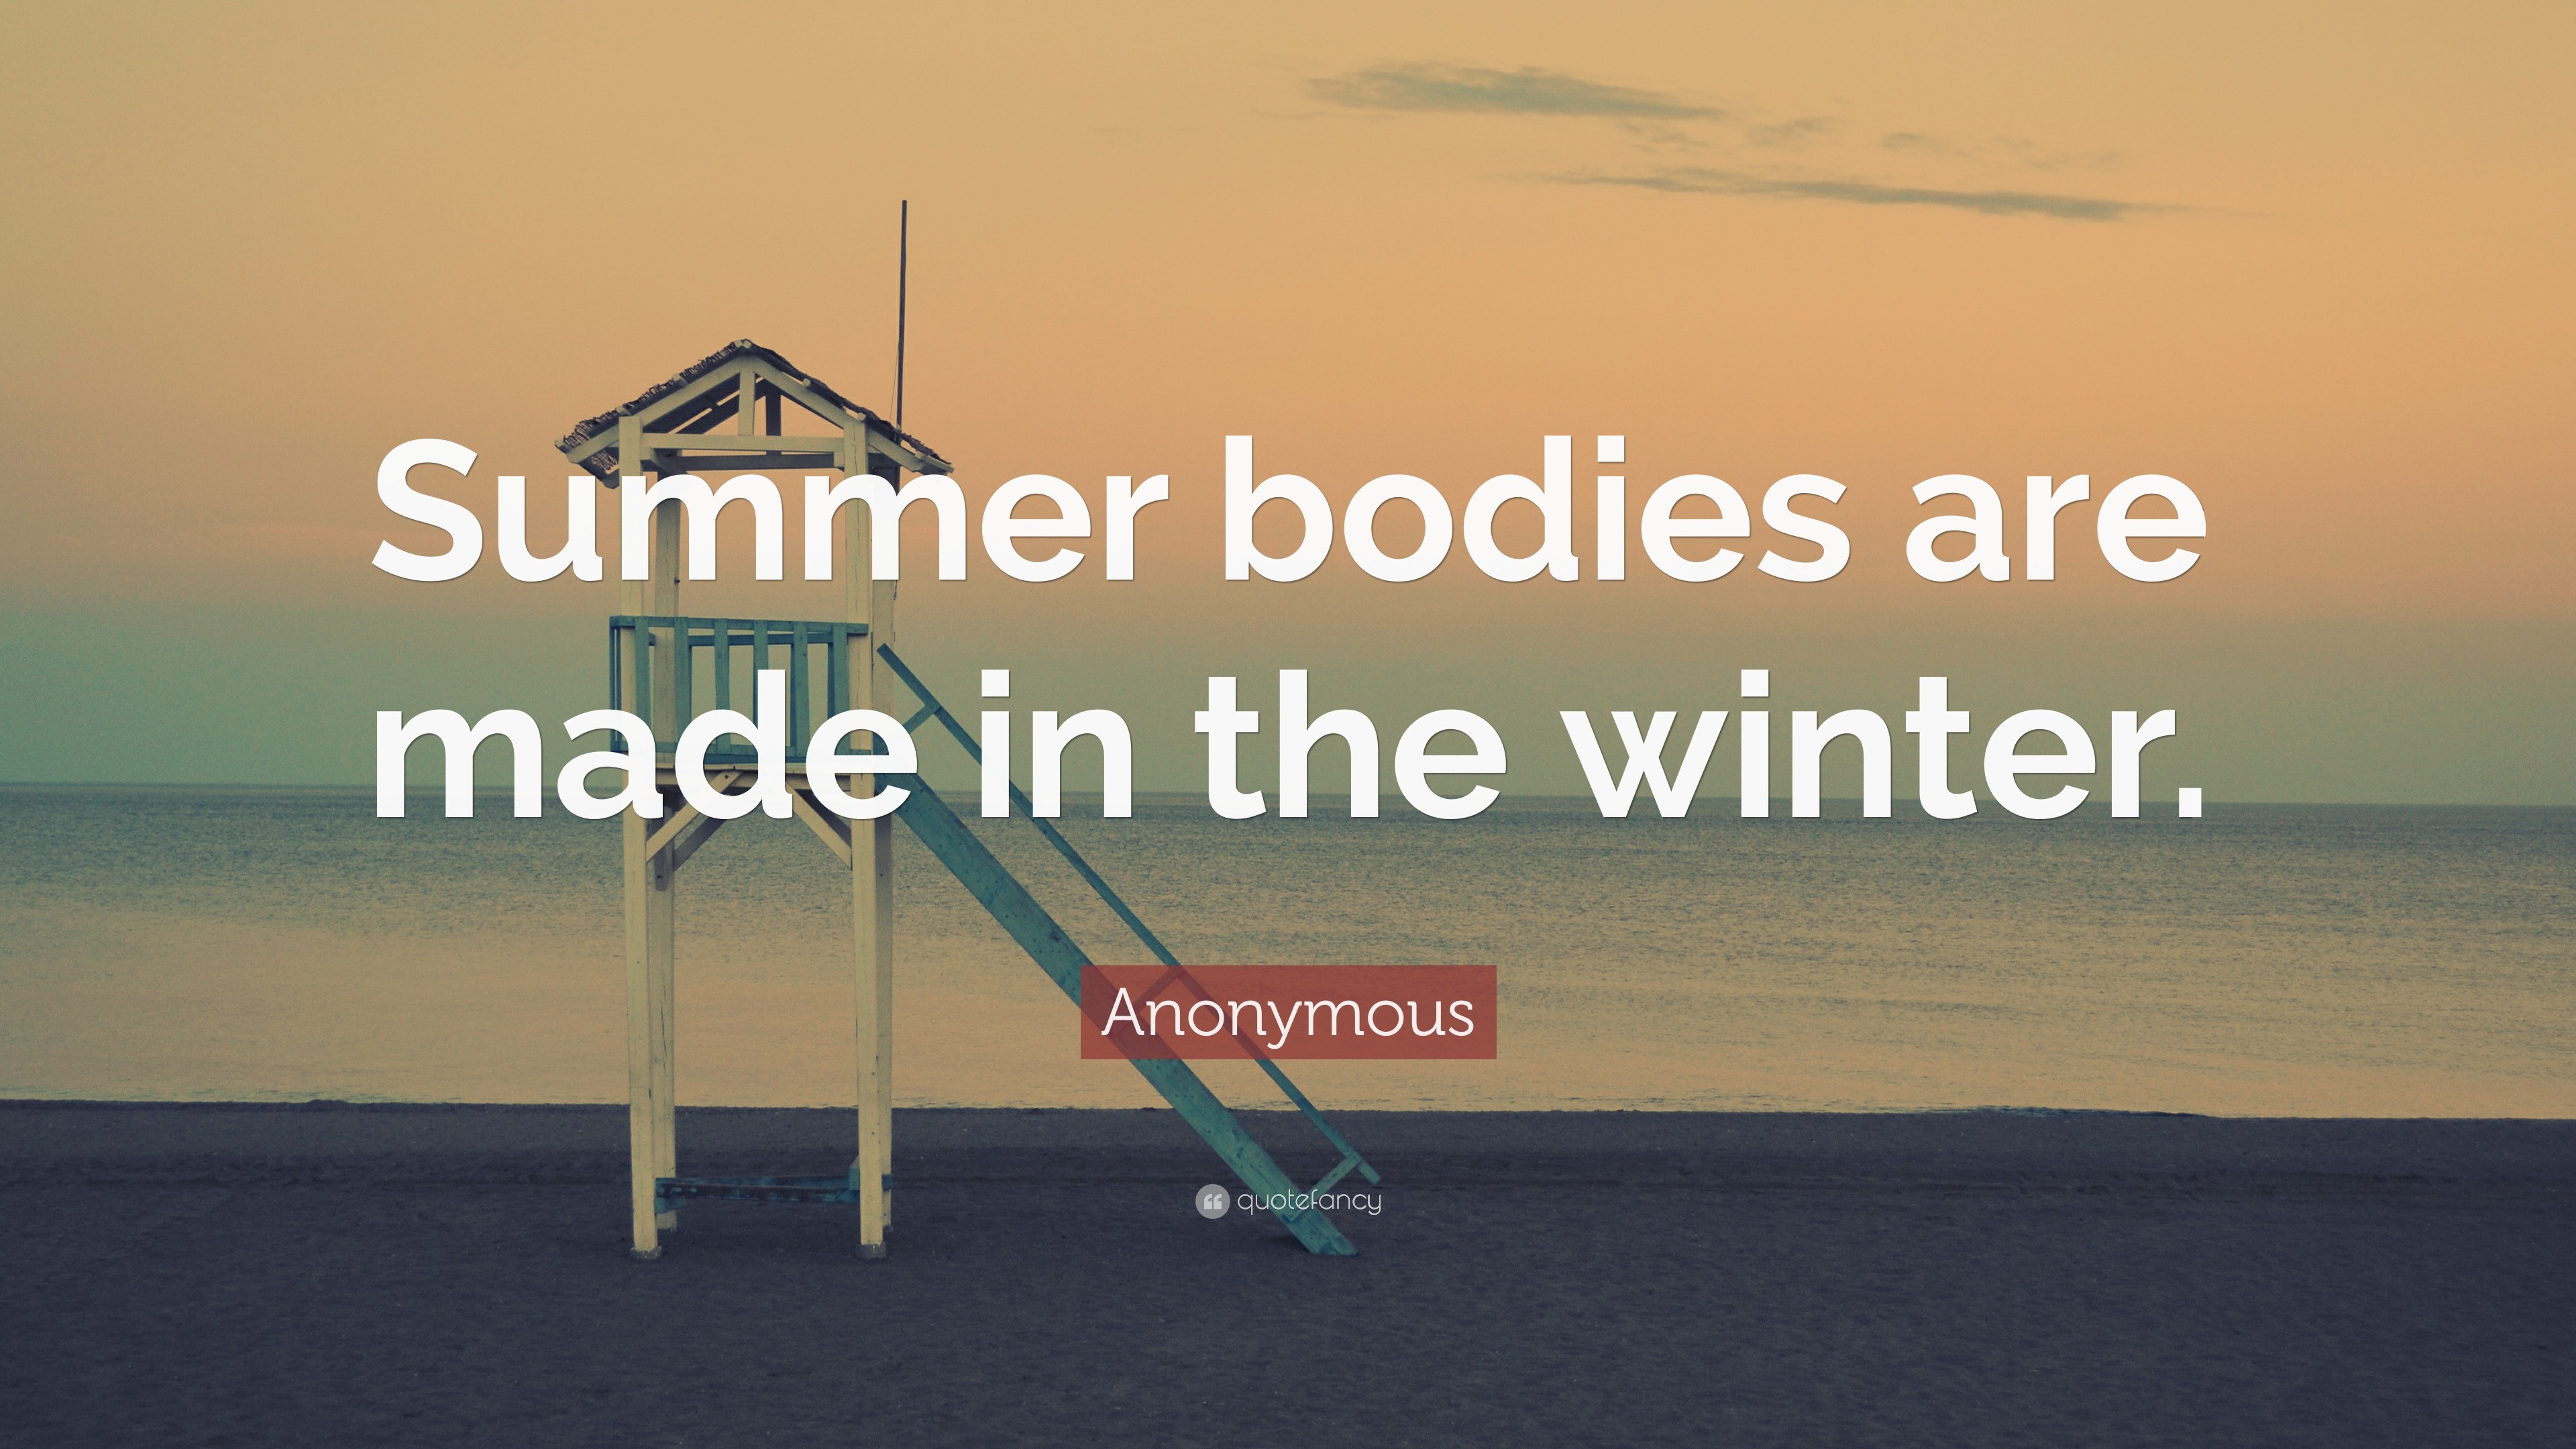 Unique Body Studio - Summer Bodies are made in the winter! Body